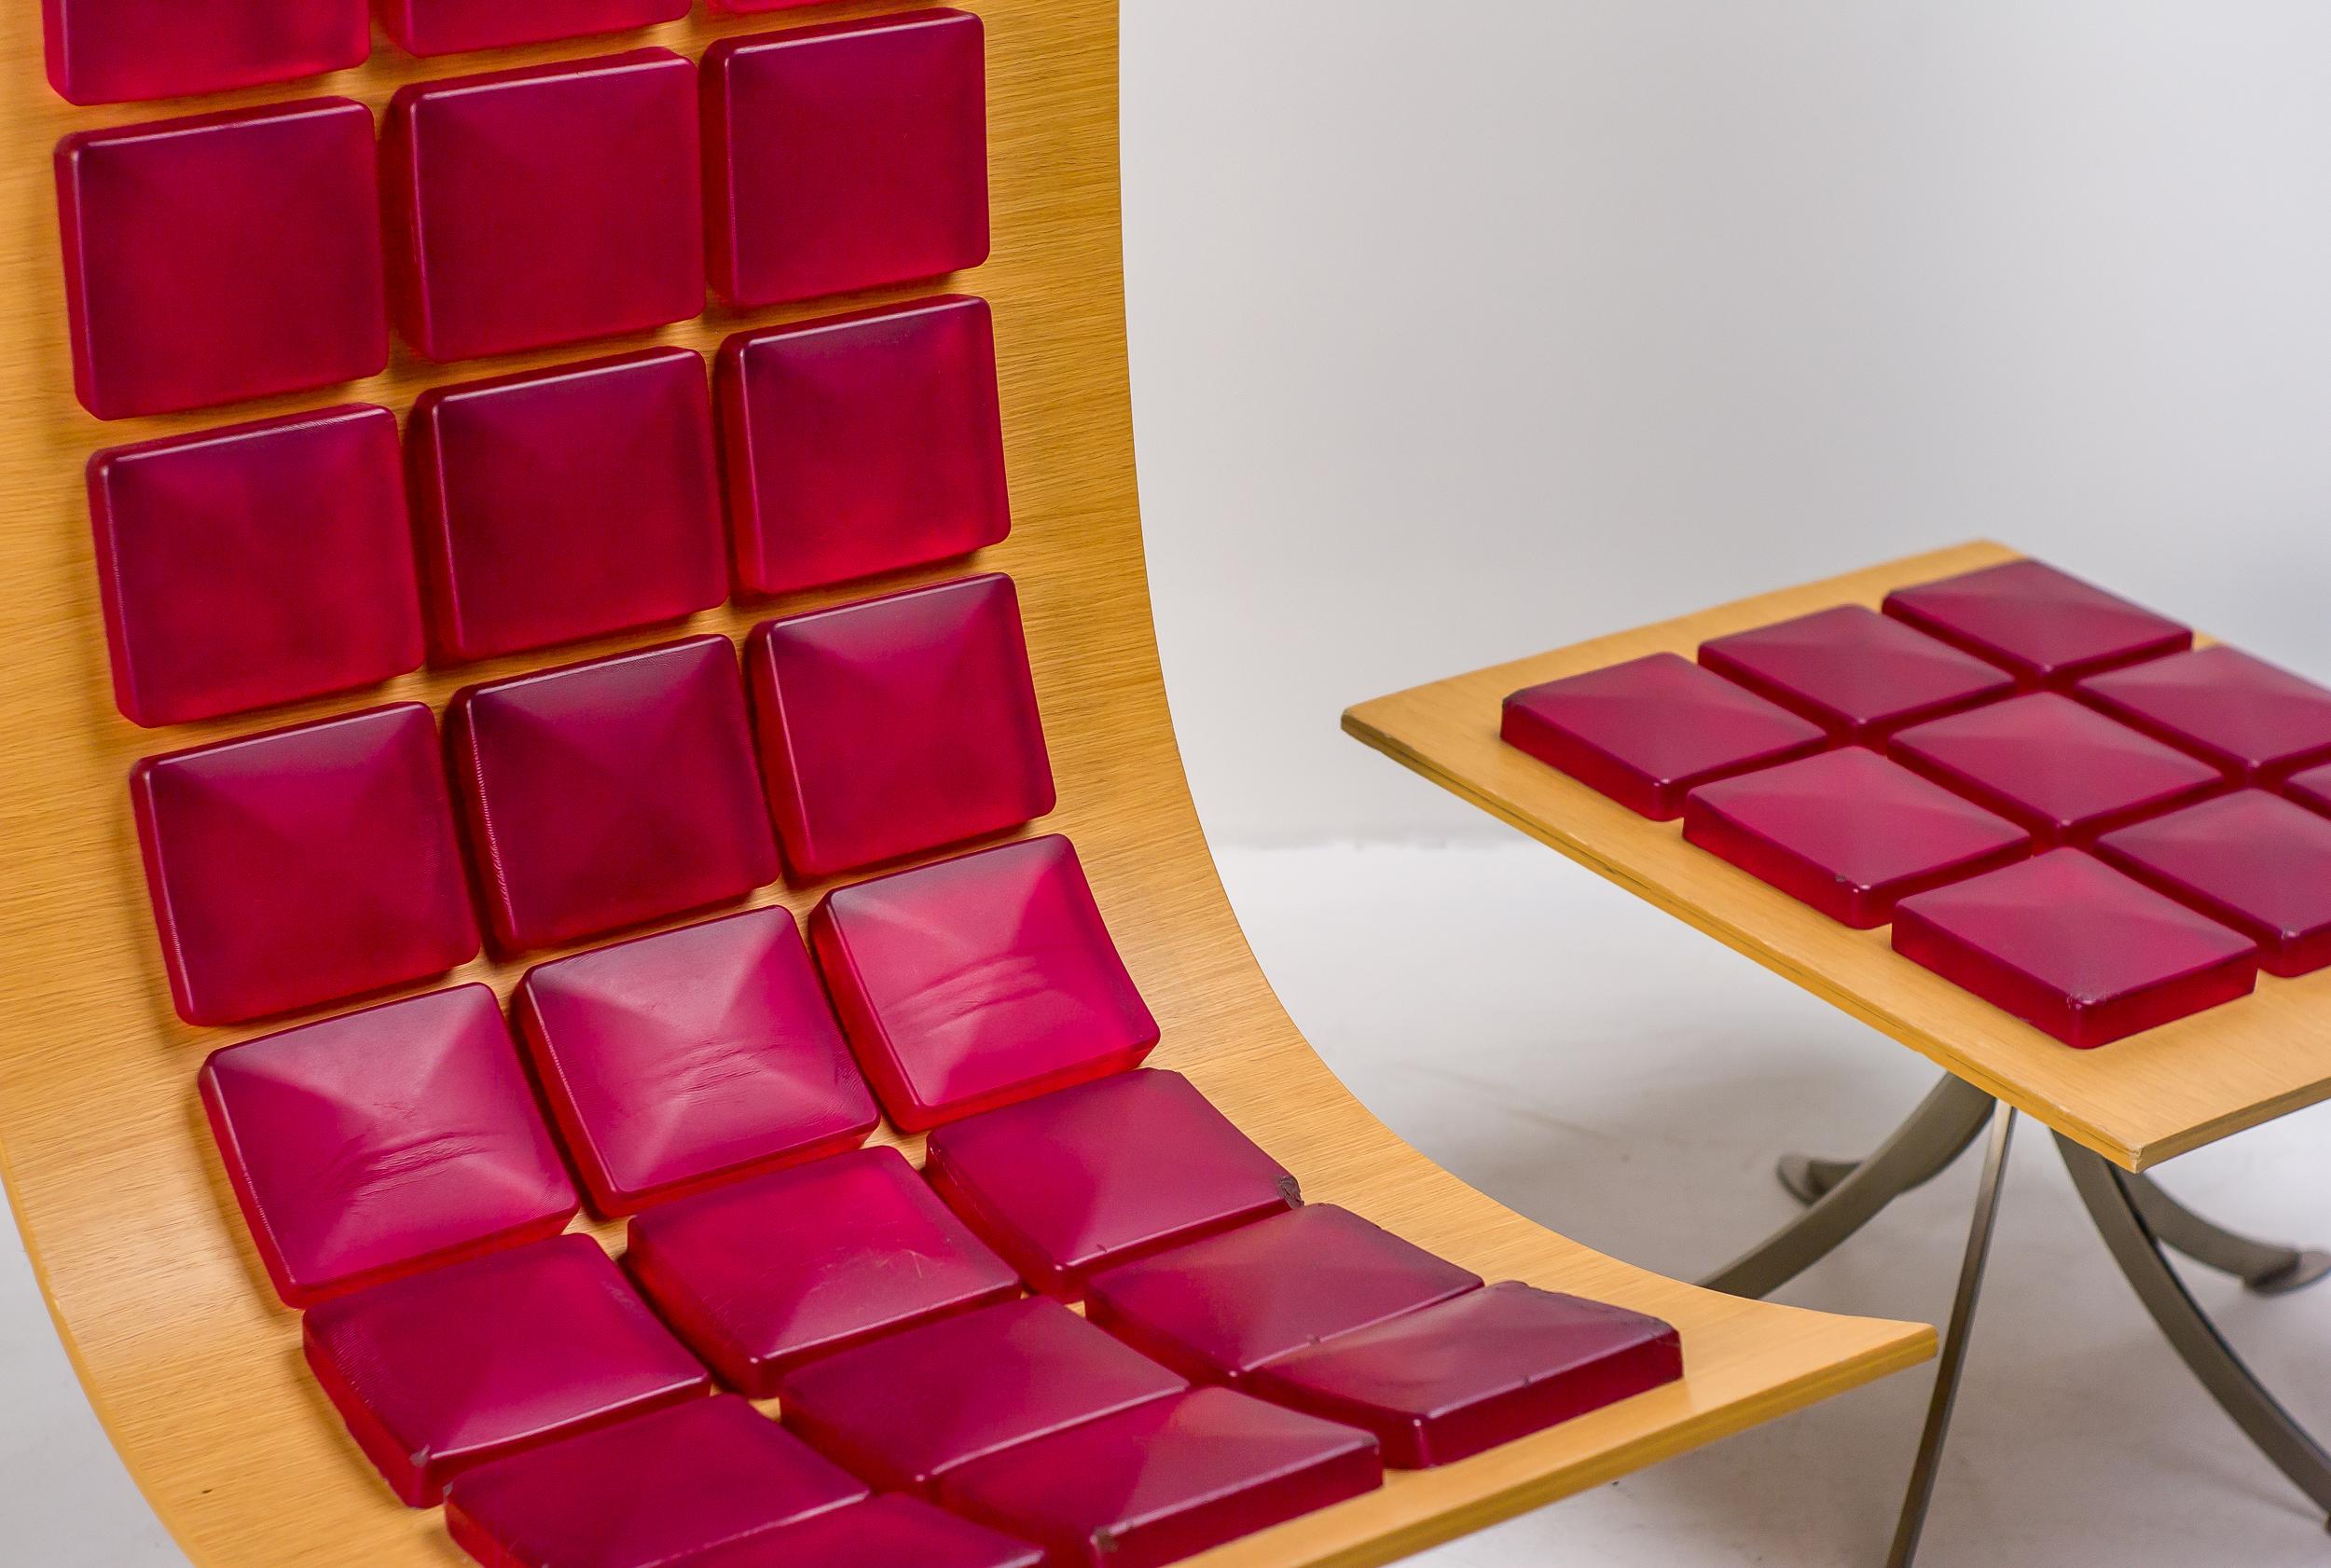 Exceptionnel et rare fauteuil Voyager avec pouf conçu par l'artiste Gaby Fois Dorell pour Saporiti, Italie.  Gaby Fois Dorell est une artiste et designer franco-américaine connue pour ses peintures et sculptures abstraites audacieuses et colorées.